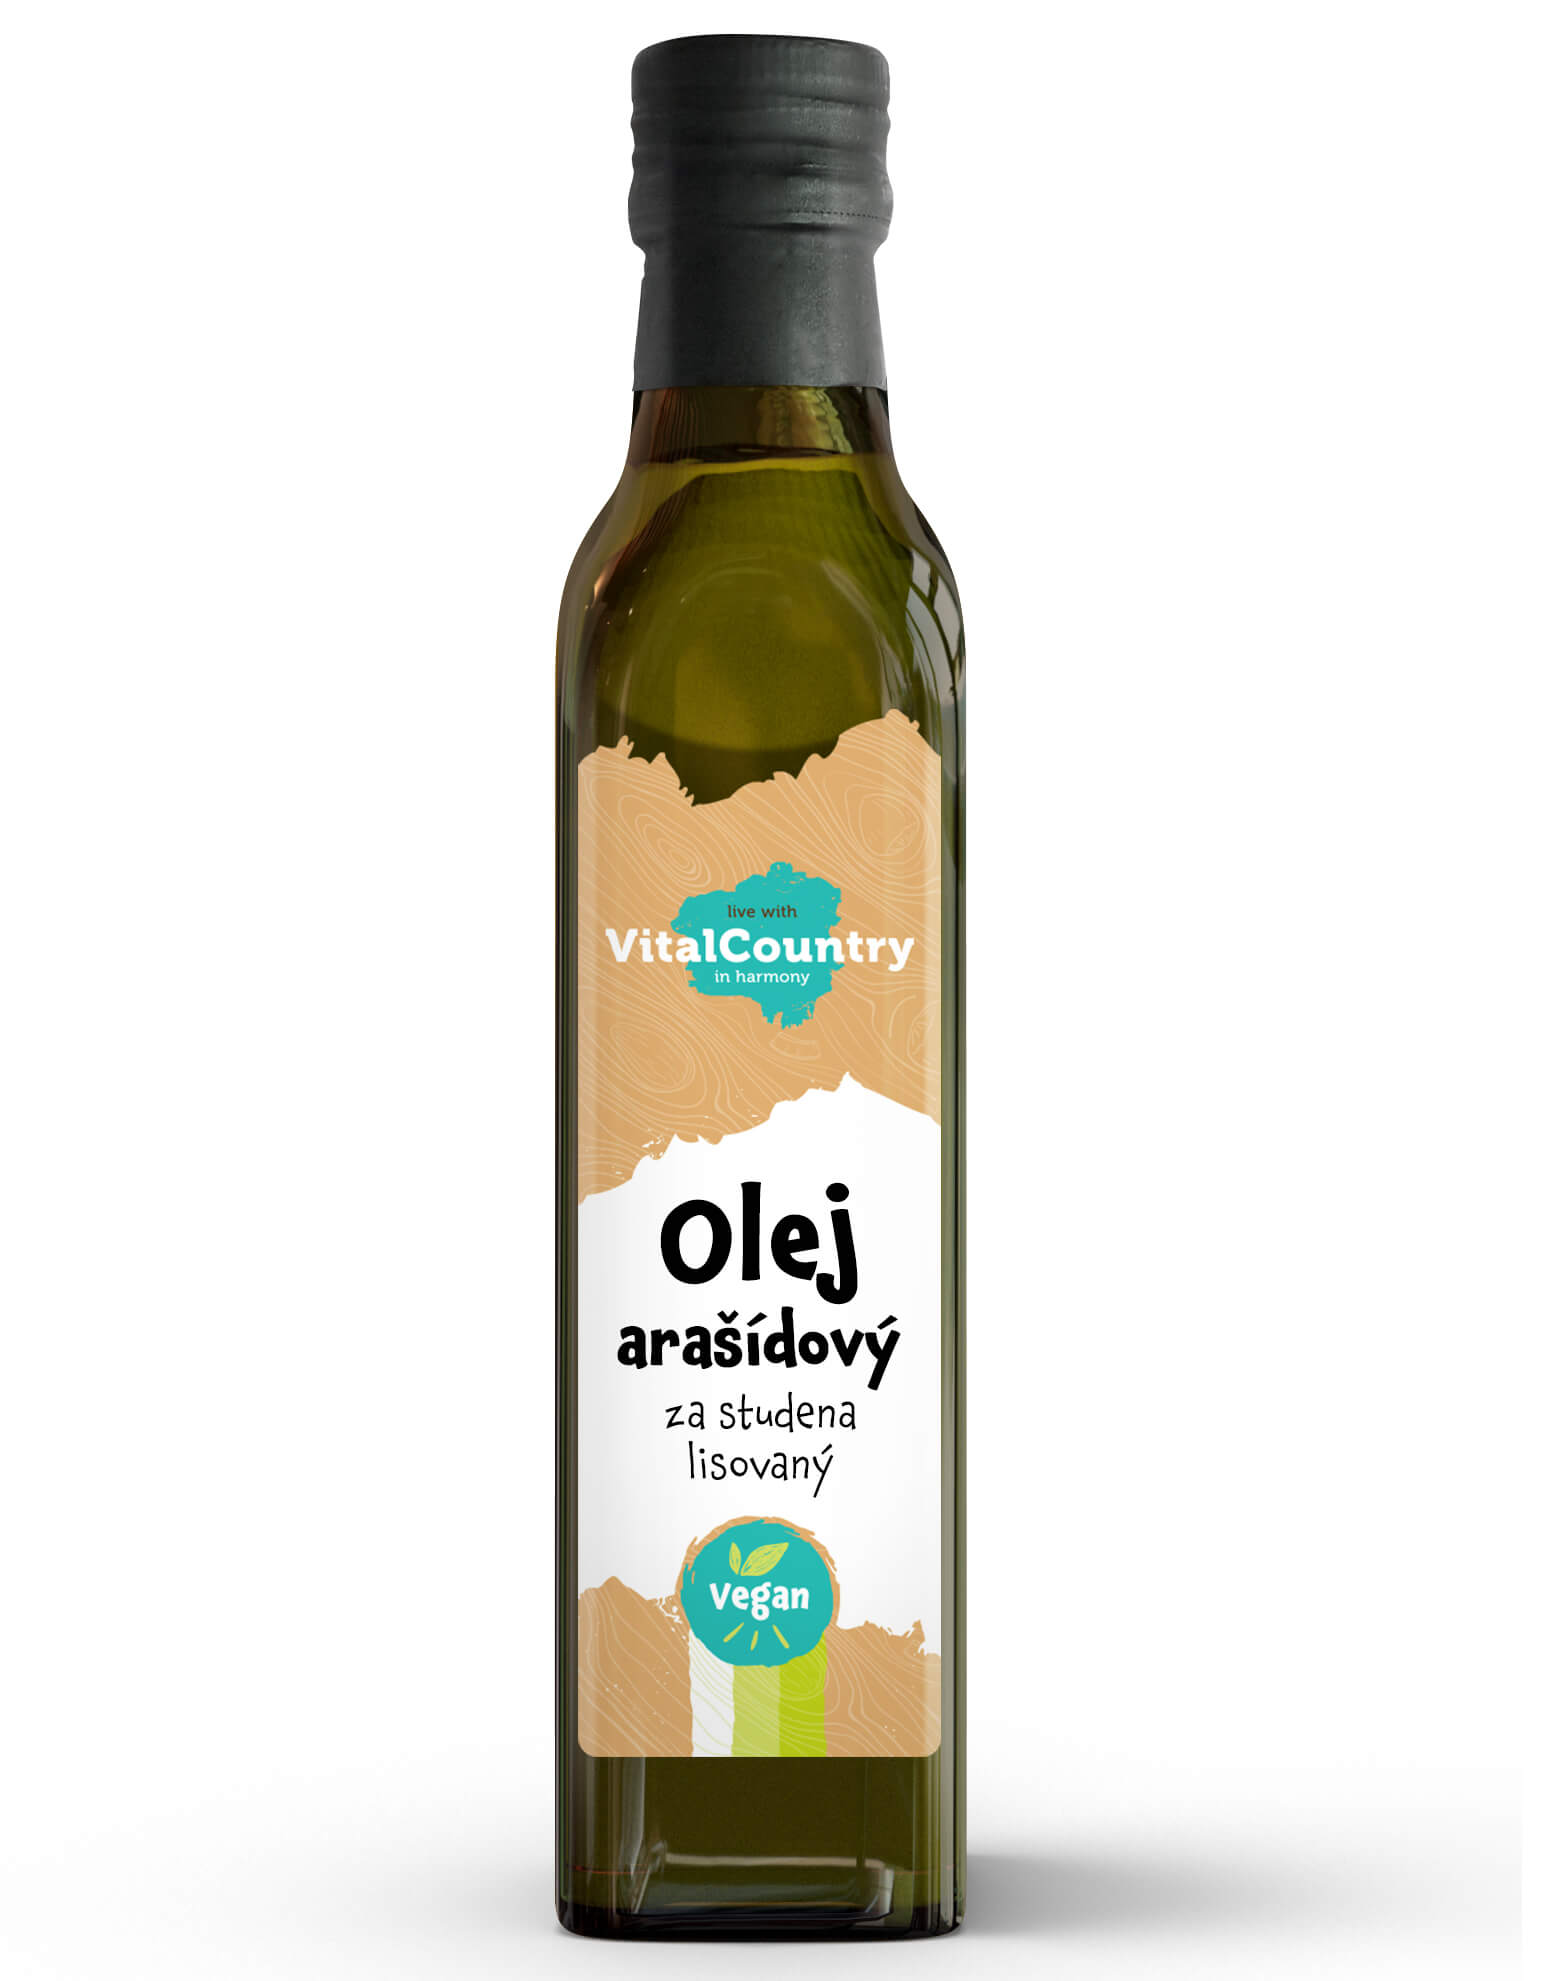 Vital Country Arašídový olej lisovaný za studena Obsah: 250 ml